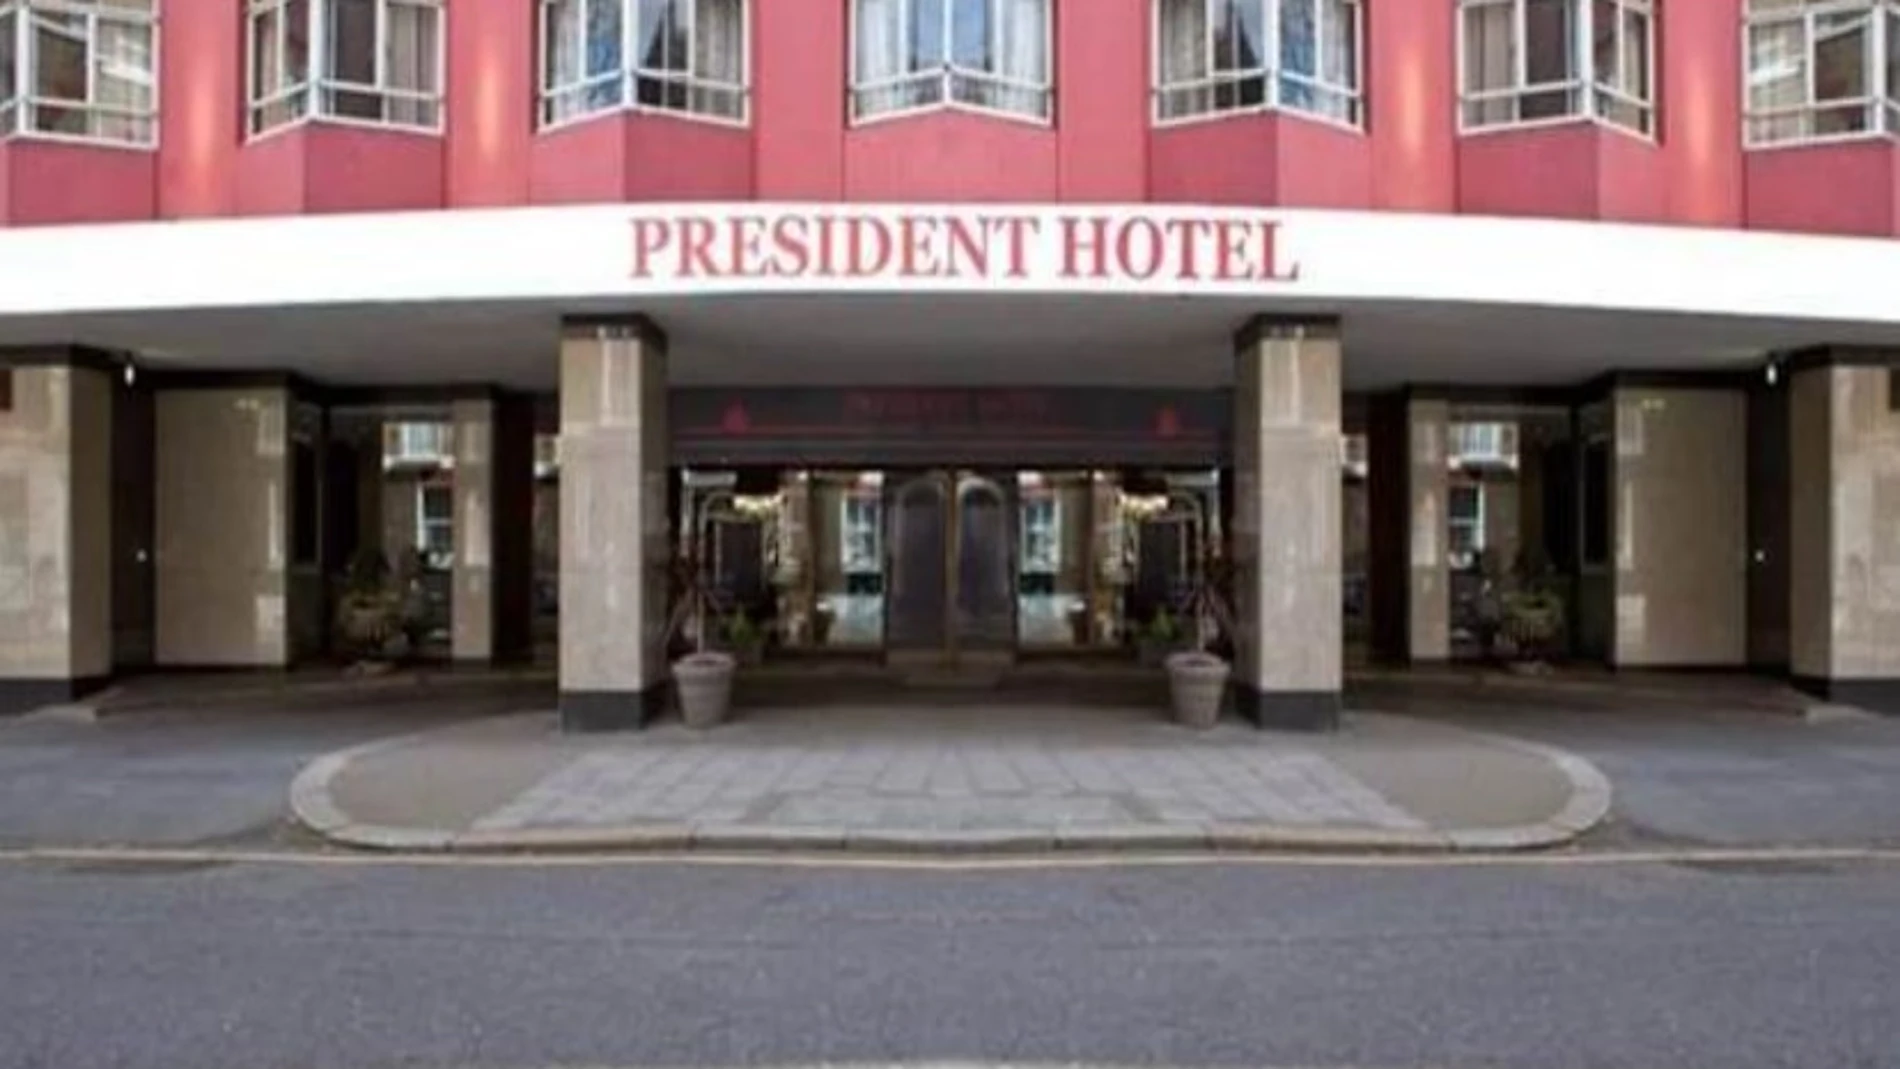 Una portavoz del Departamento de Salud y Atención Social defiende el hotel y añade que su principal prioridad siempre ha sido "proteger al público". President Hotel